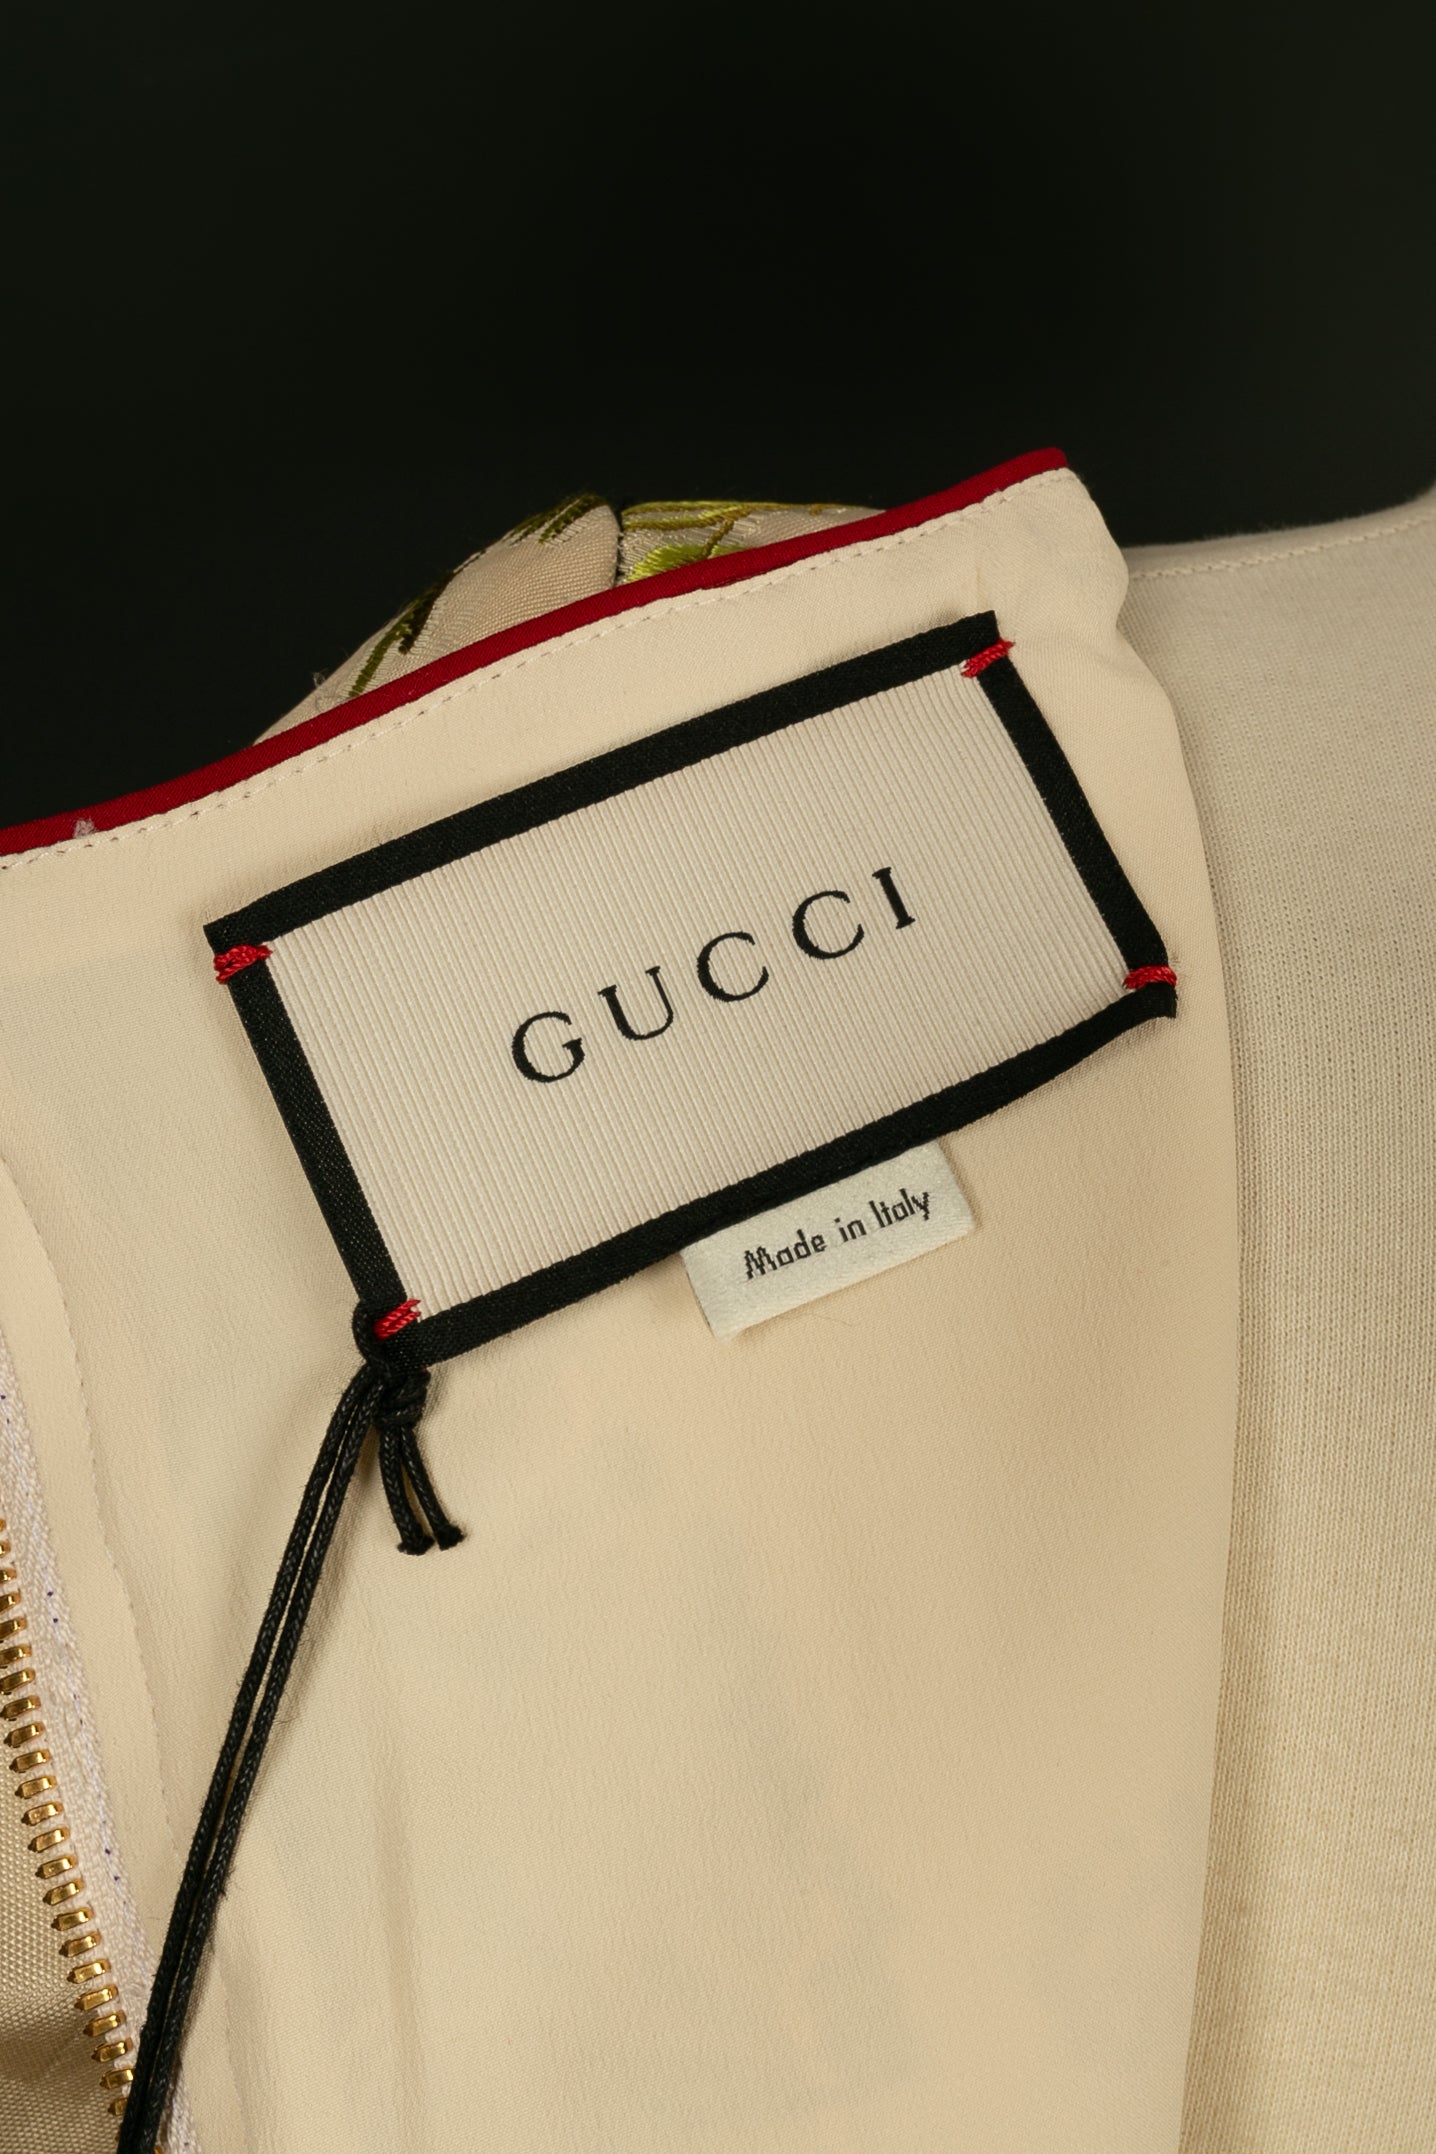 Robe Gucci Pre-fall 2016